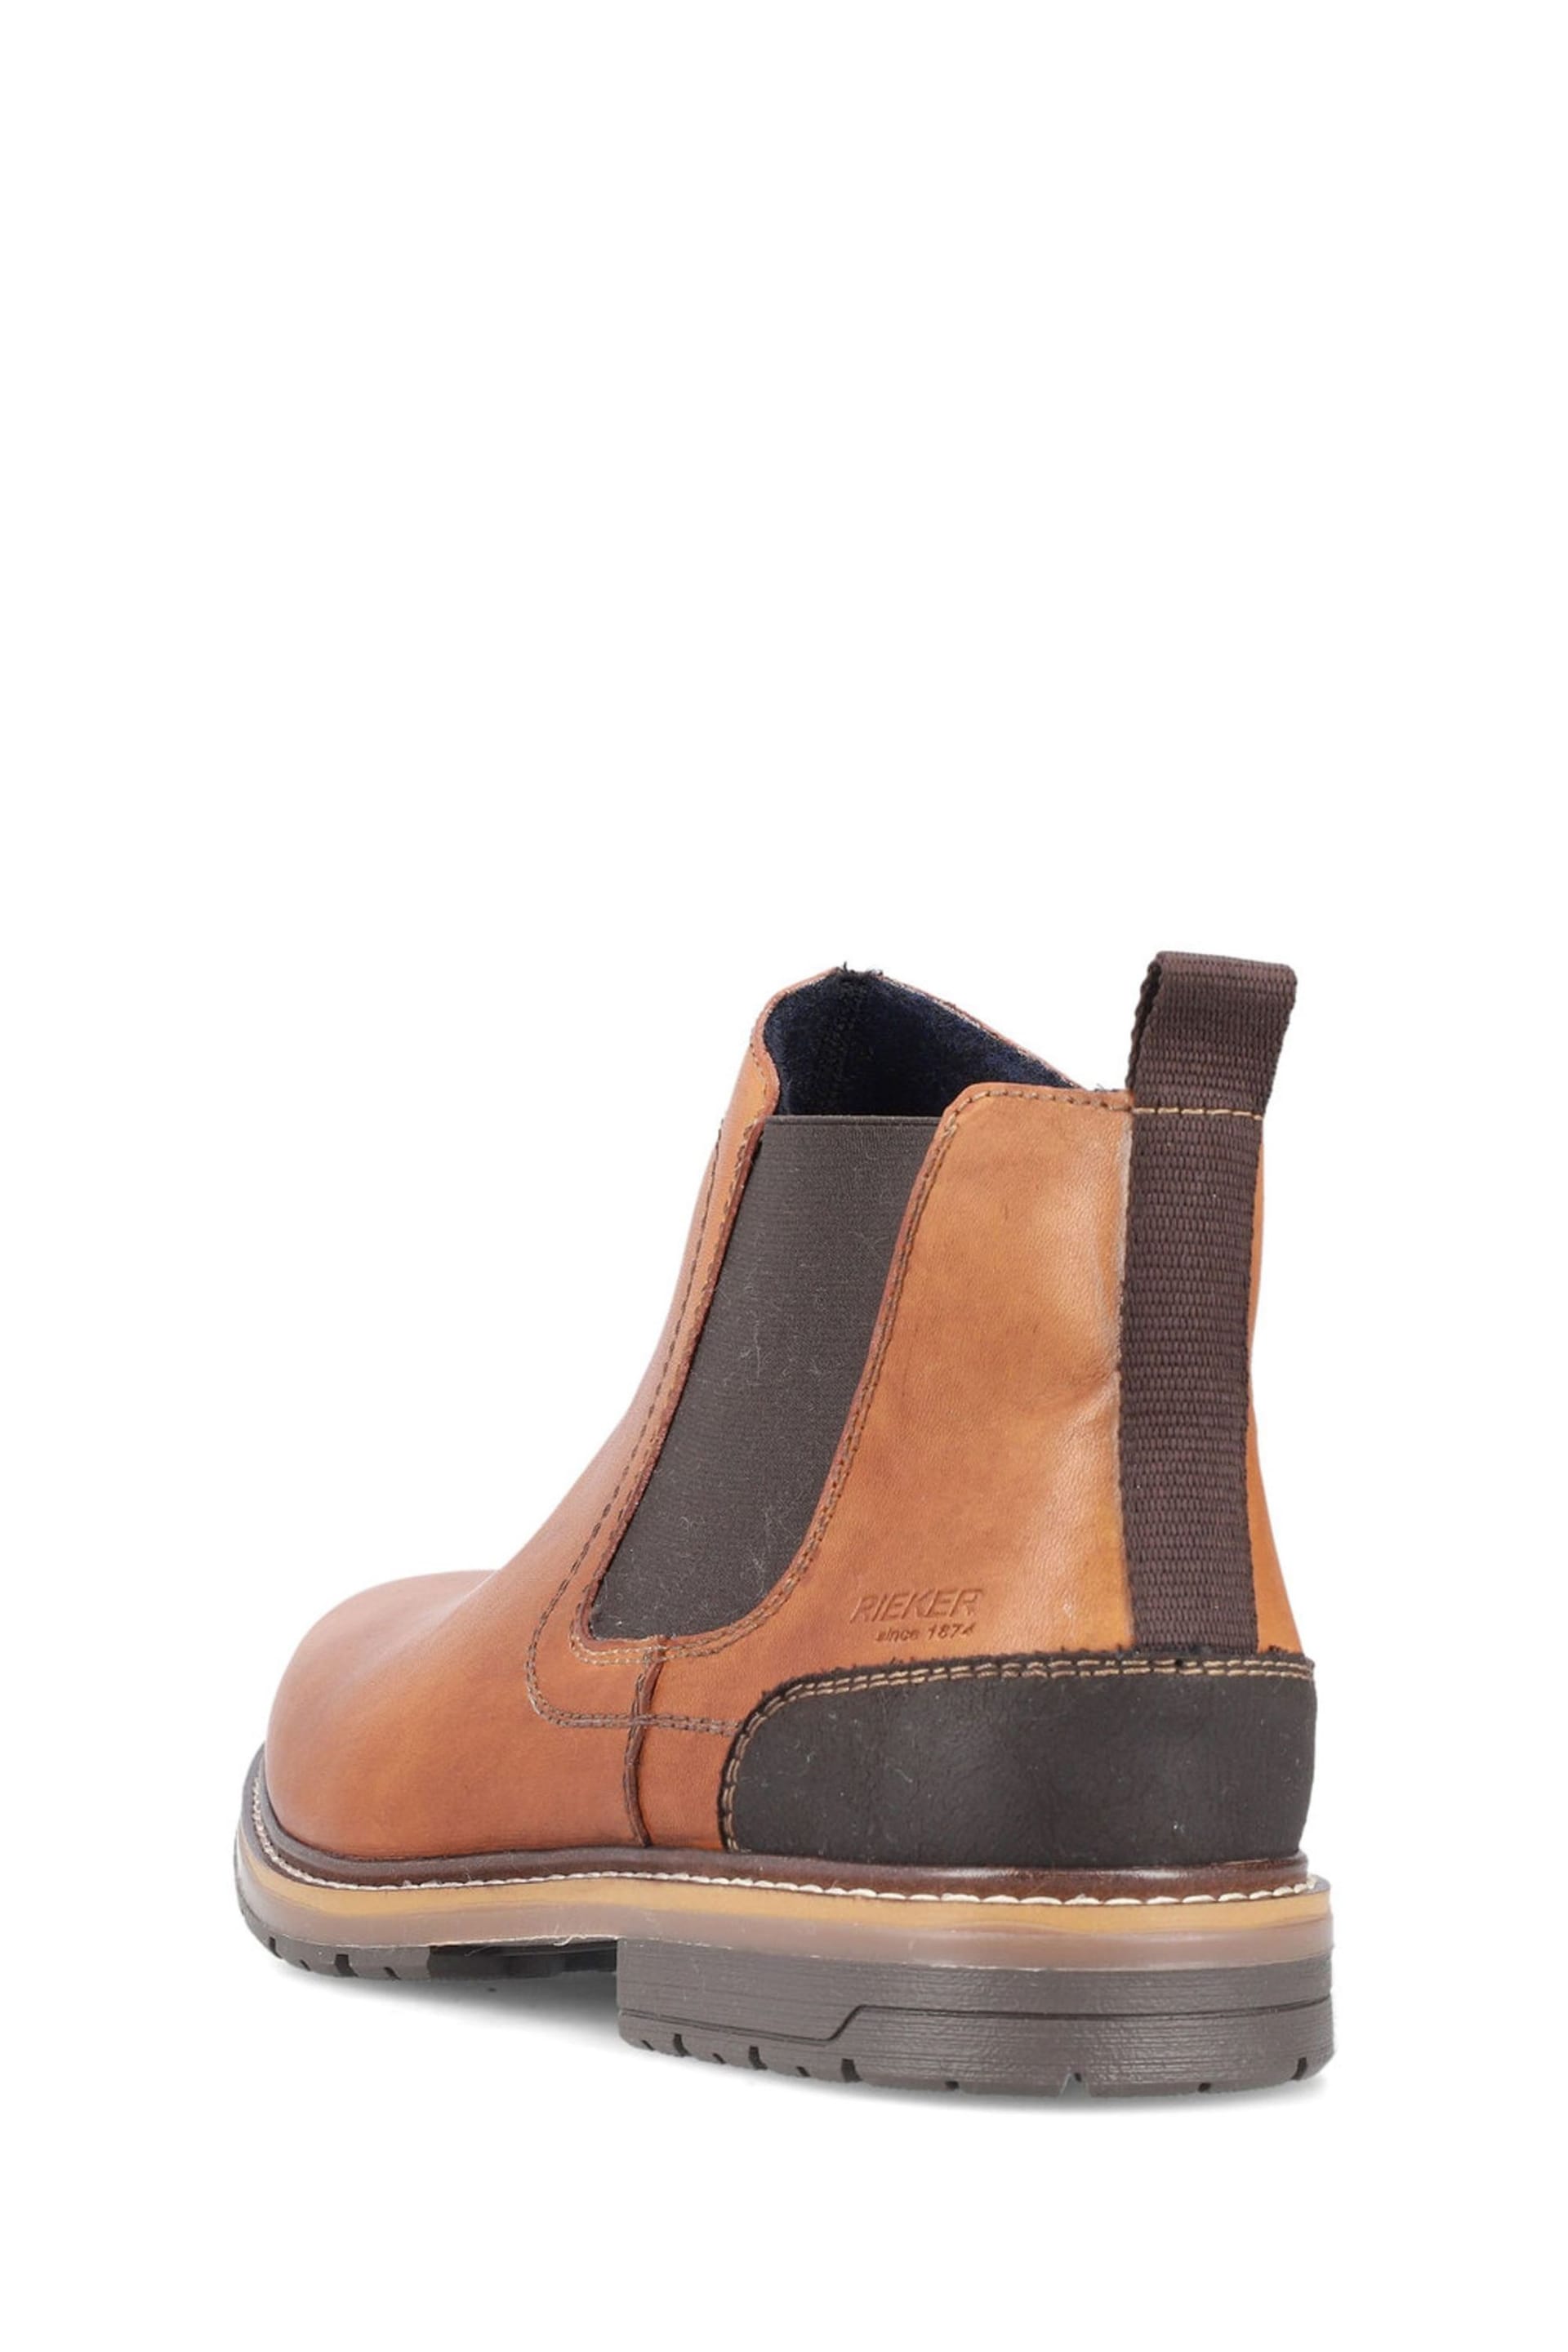 Rieker Mens Zipper Brown Boots - Image 6 of 11